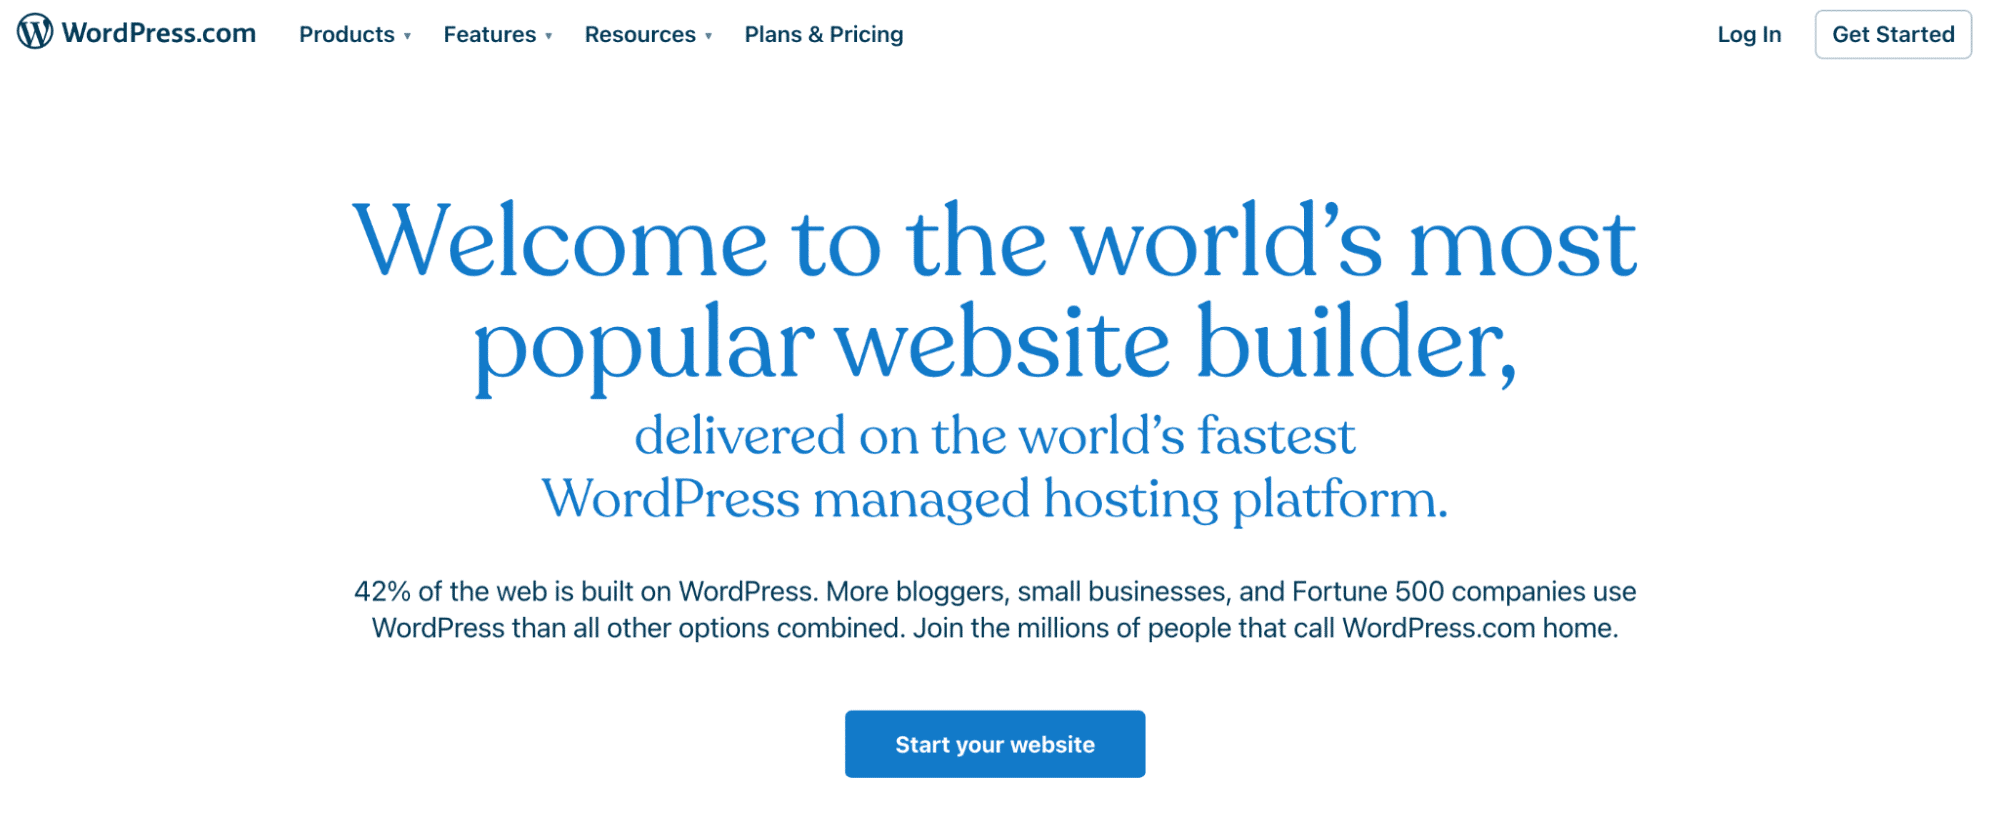 WordPress.com 主頁的屏幕截圖，白色背景上有藍色文字，上面寫著 